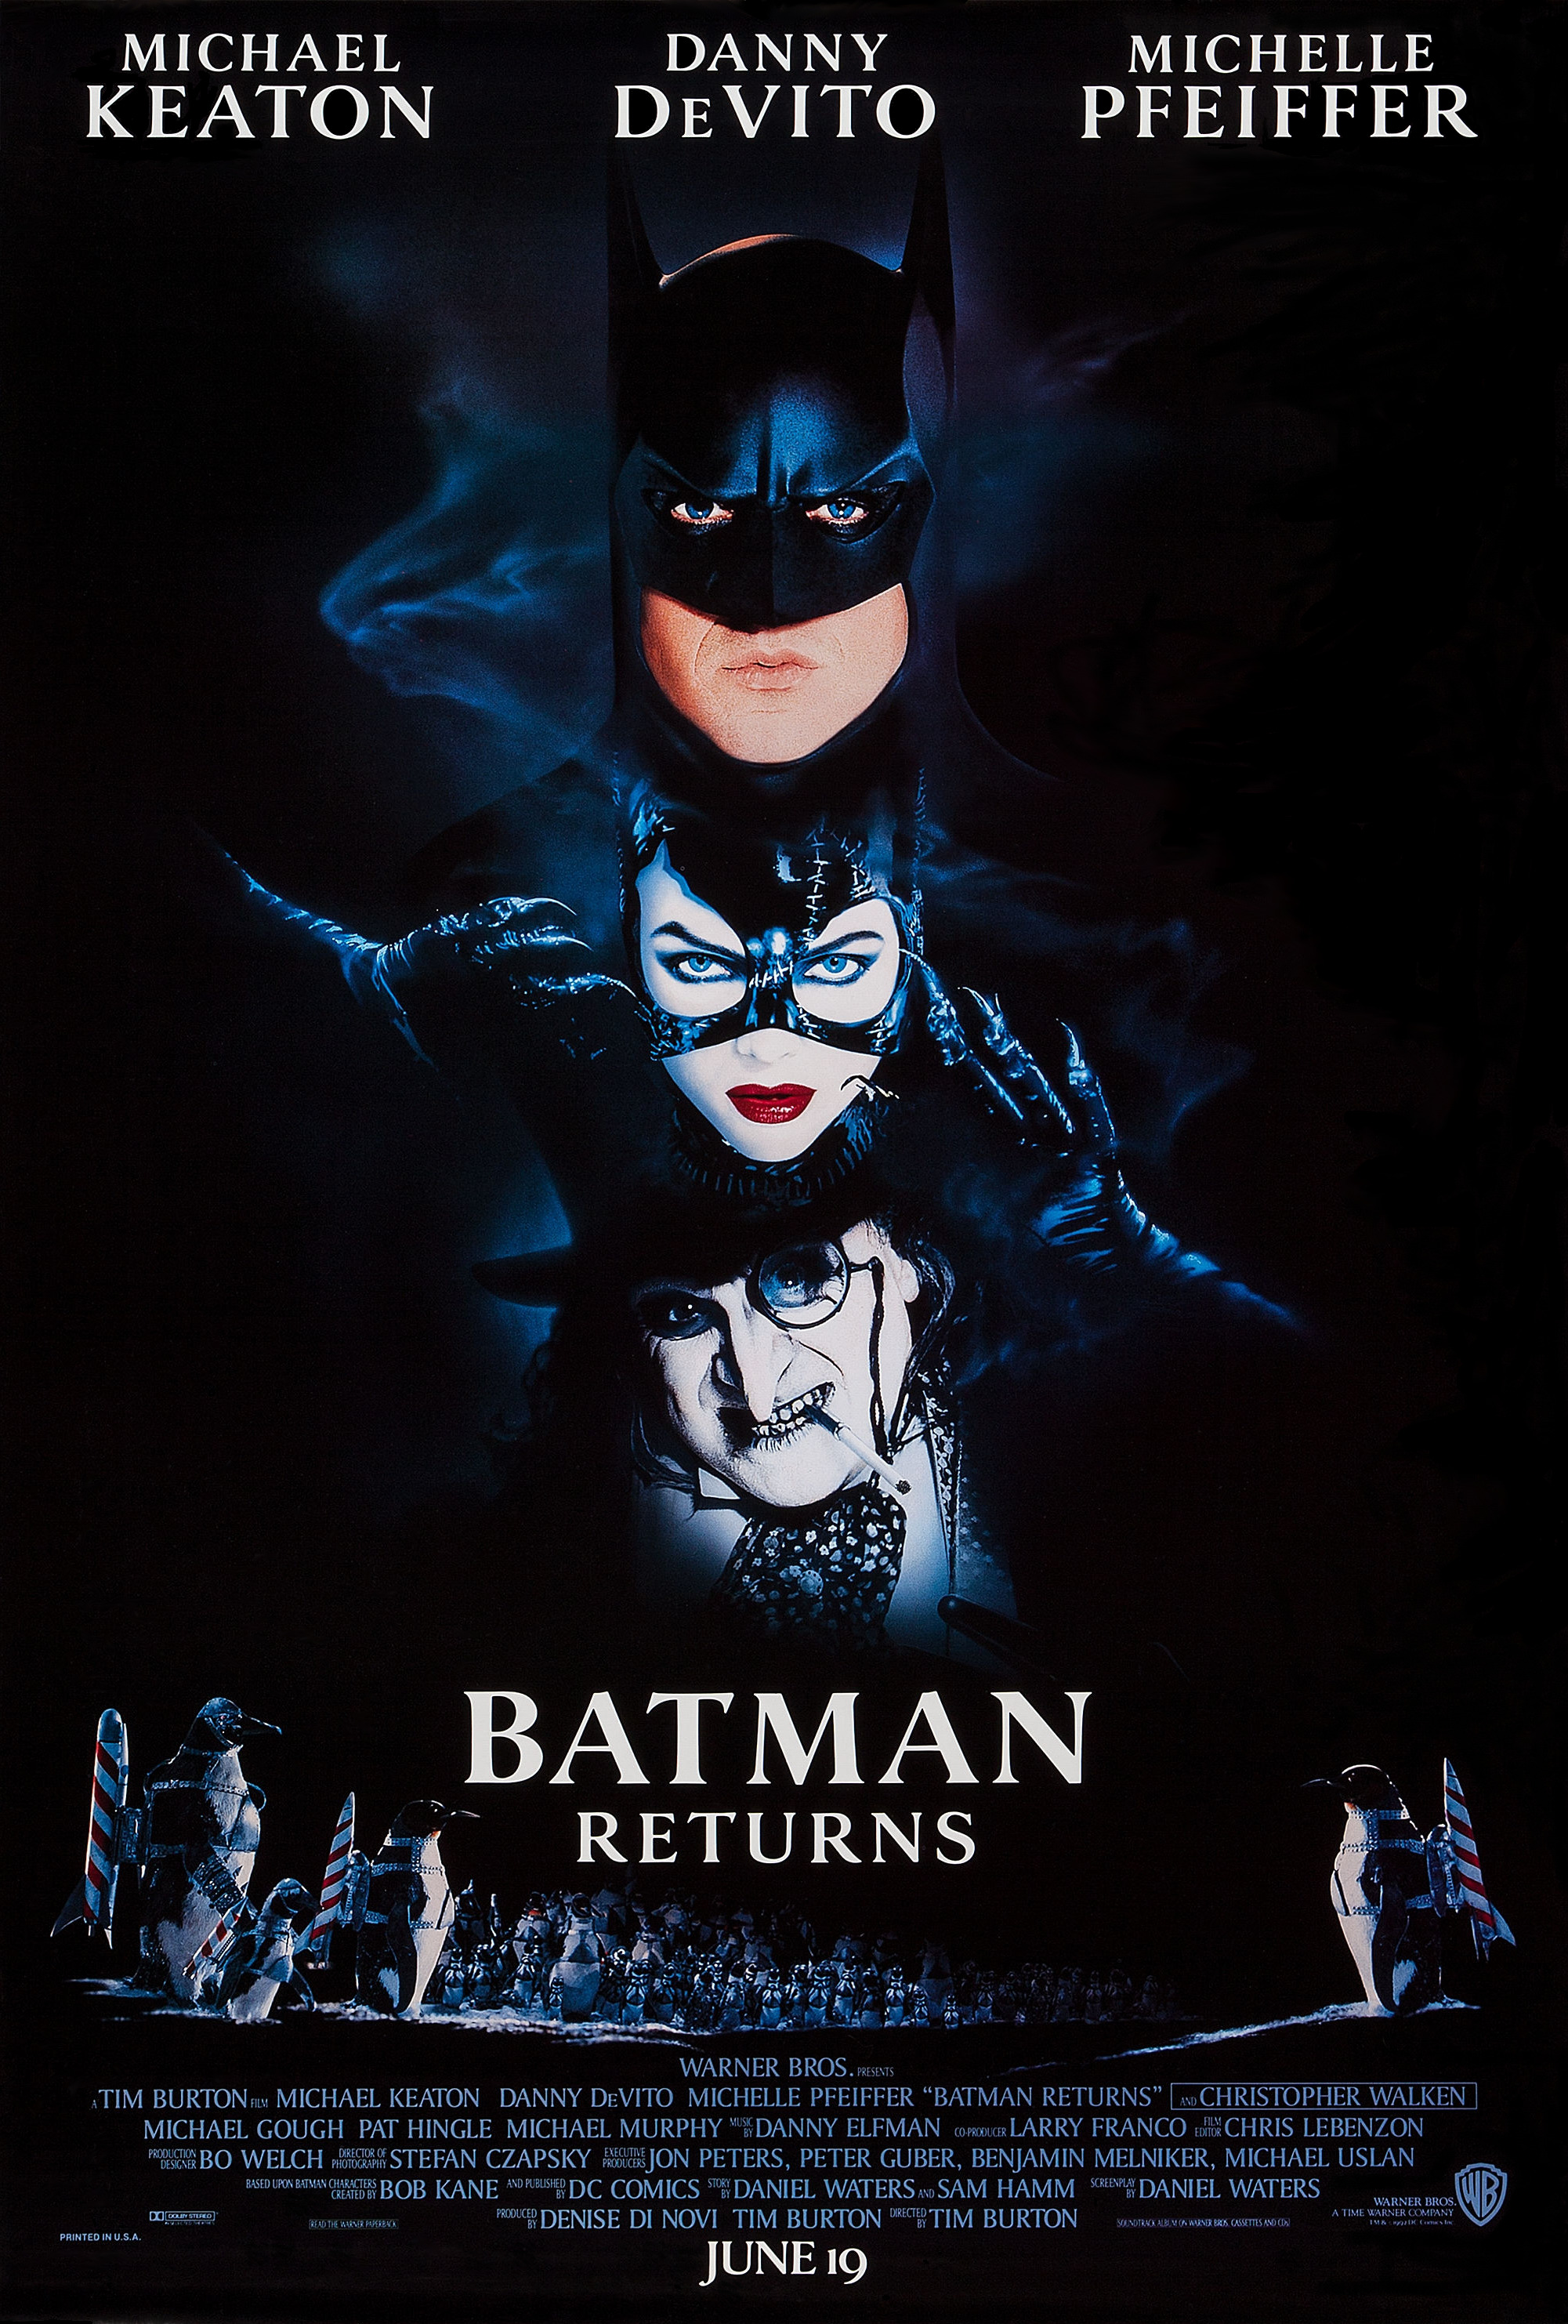 Batman Returns Warner Bros pic image